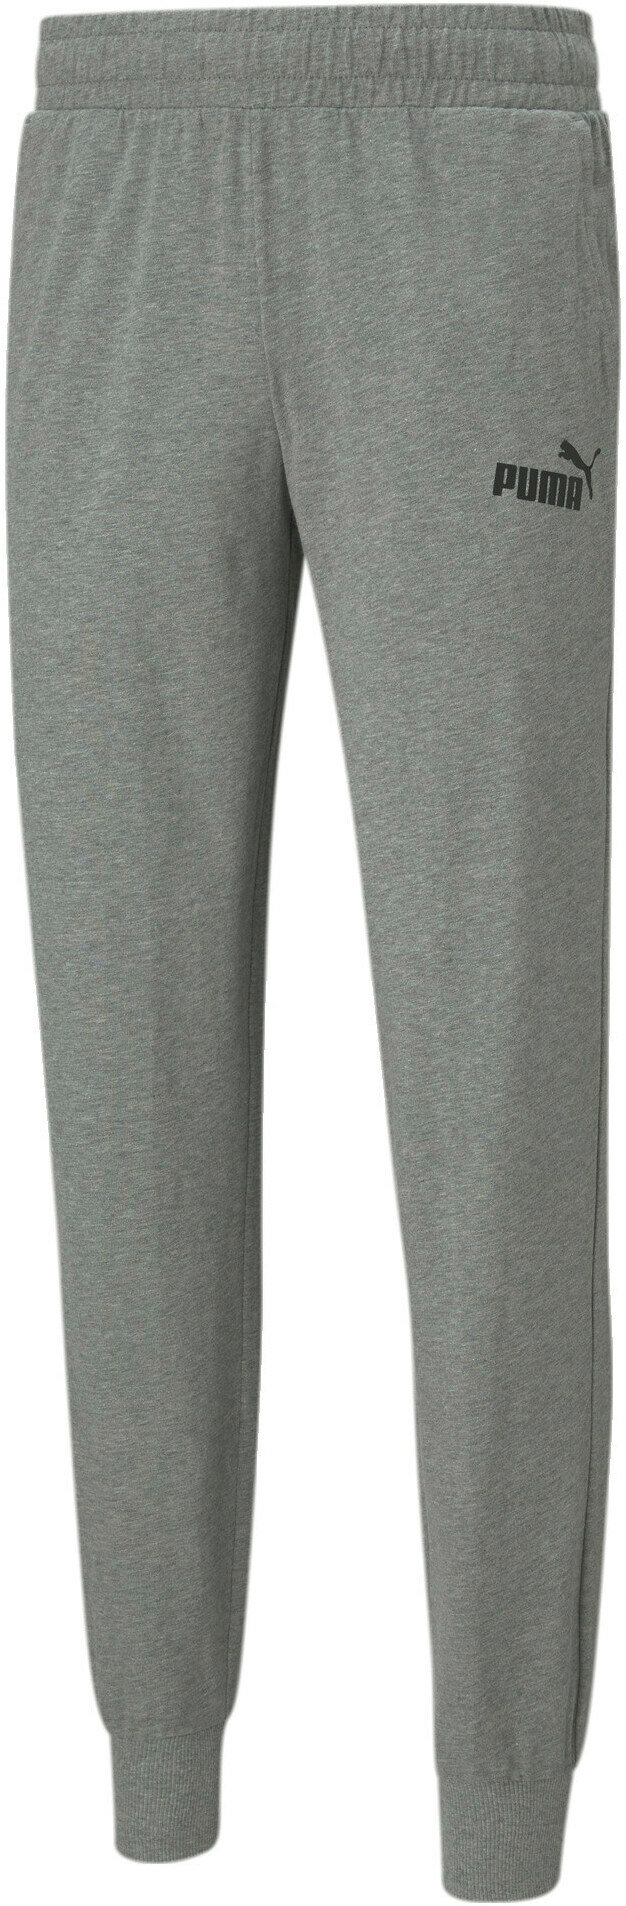 Брюки спортивные PUMA Ess Jersey Pants, размер M, серый